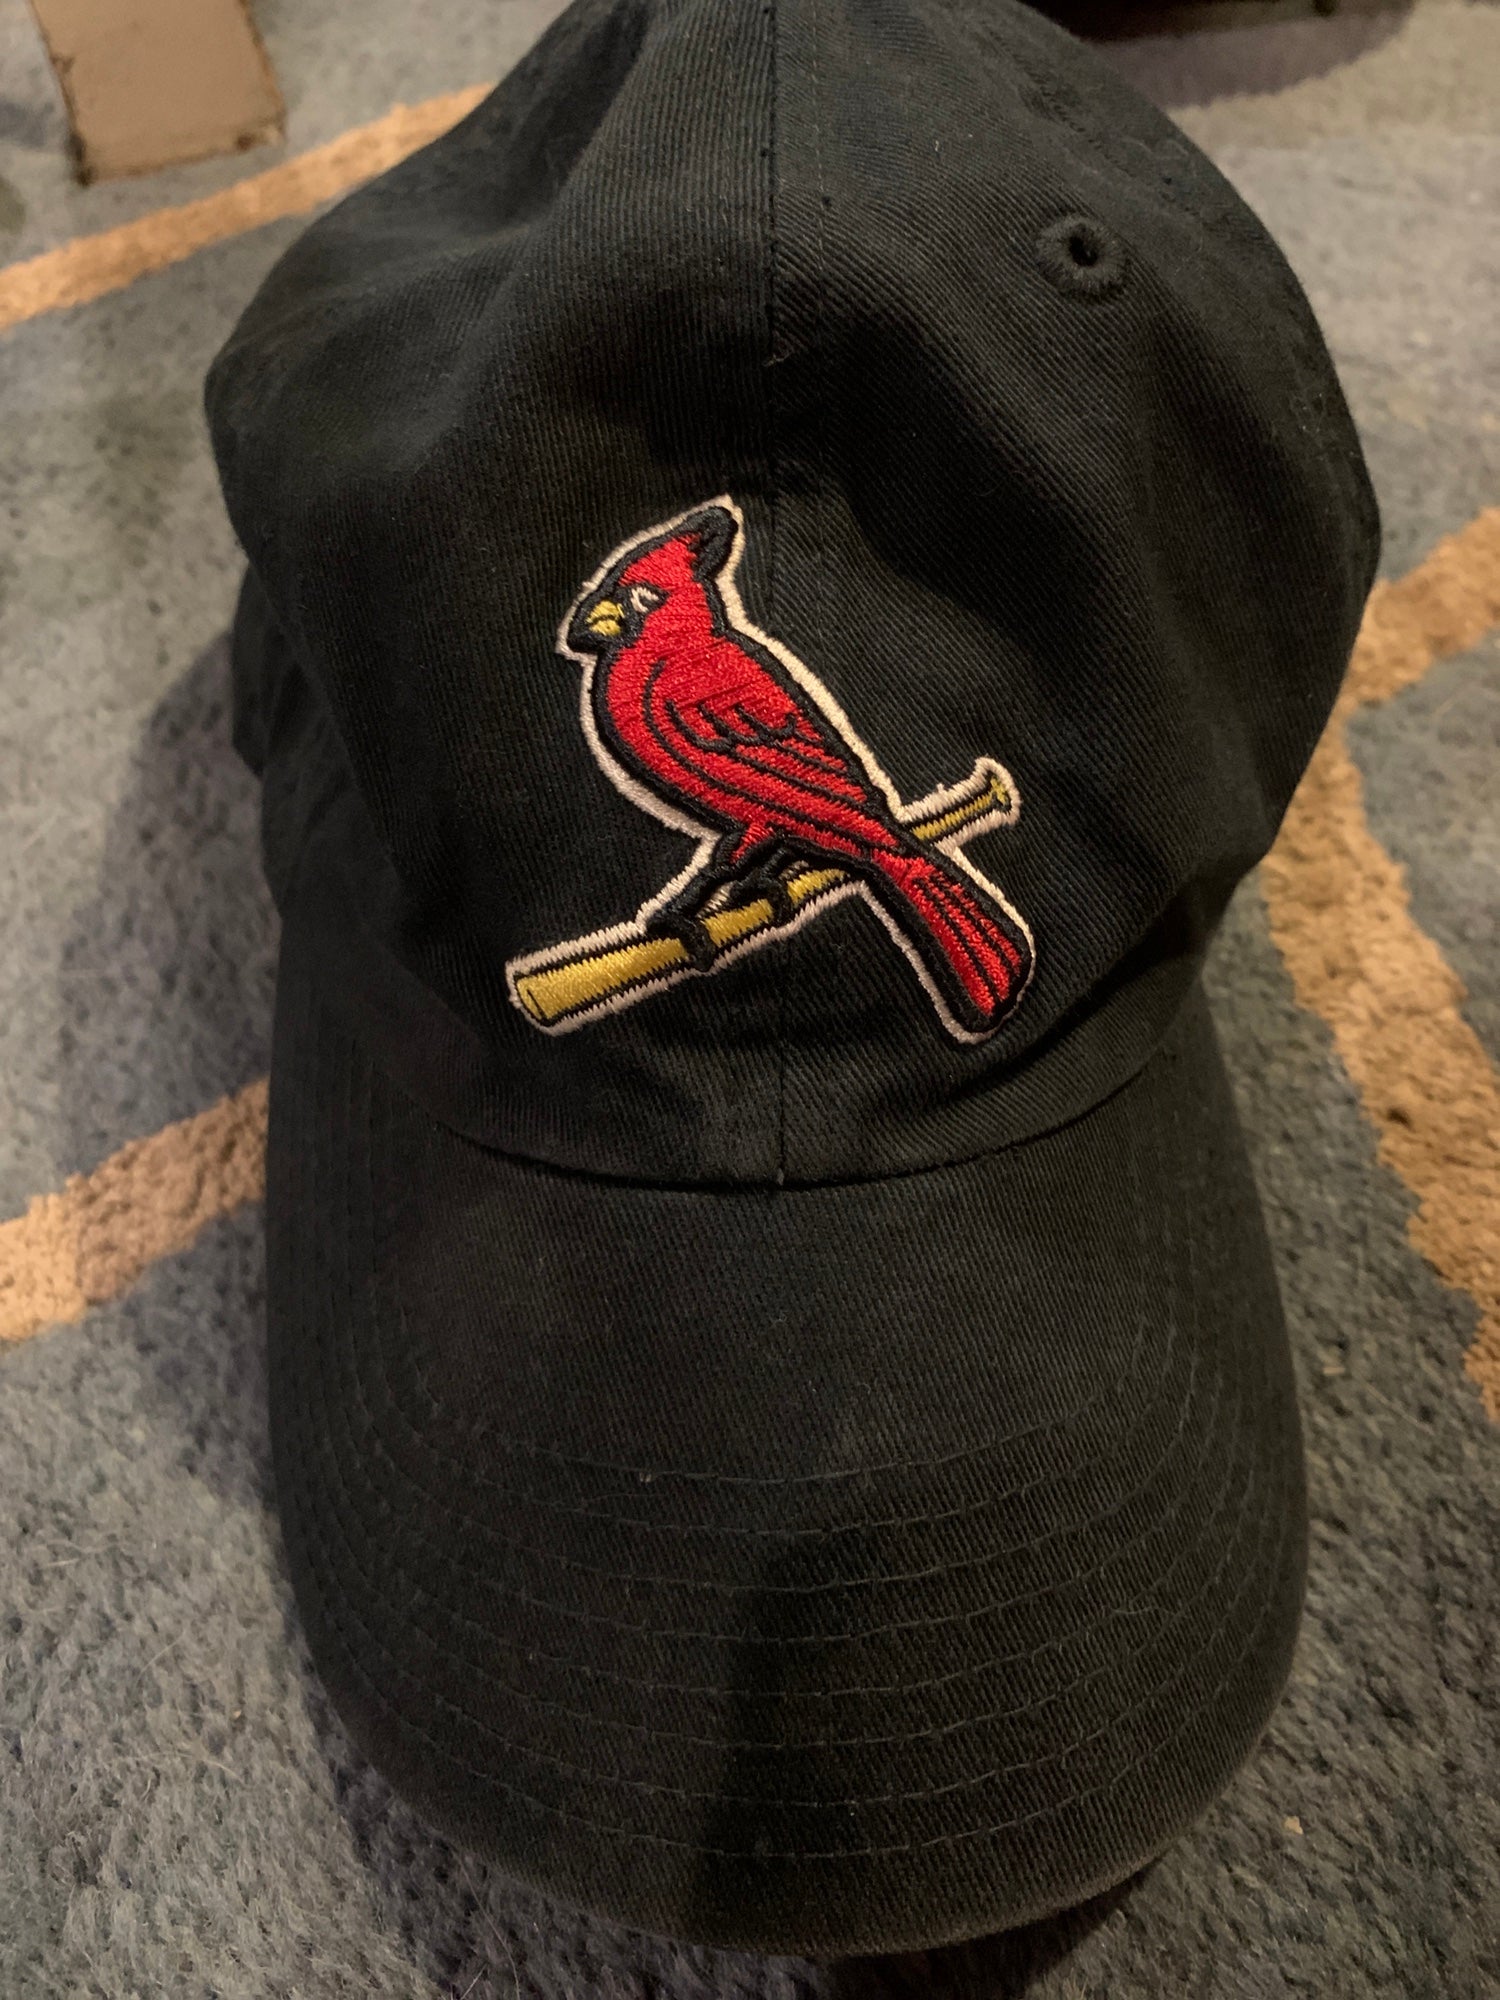 2002-2005 New Era St. Louis Cardinals Hat - Having trouble